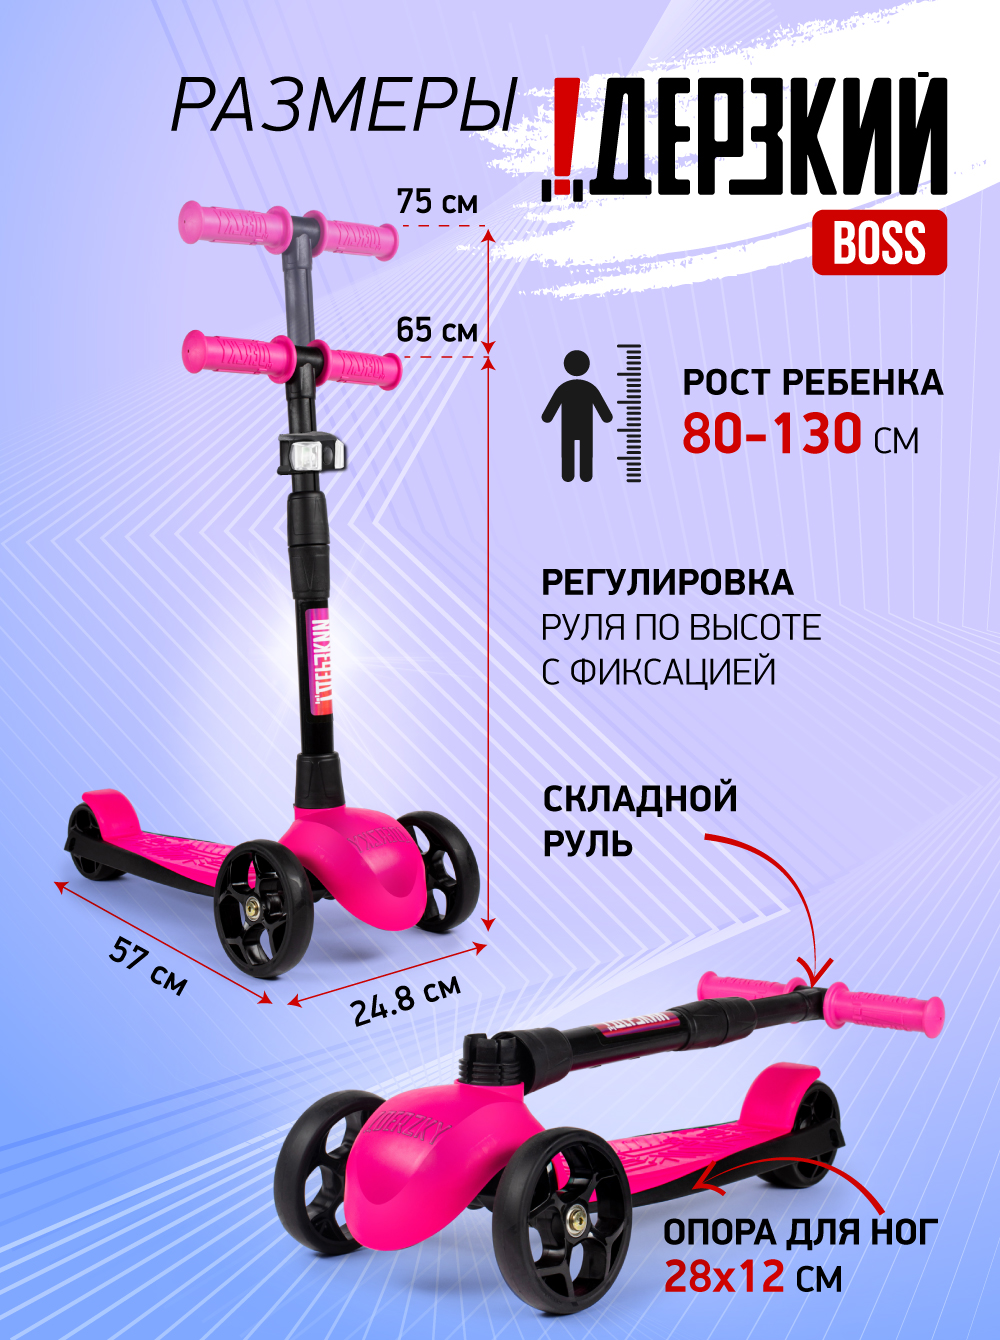 Самокат детский трехколесный Дерзкий 4-7 лет BOSS бесшумное шасси Super CHASSIS 3 года гарантии розовый - фото 4